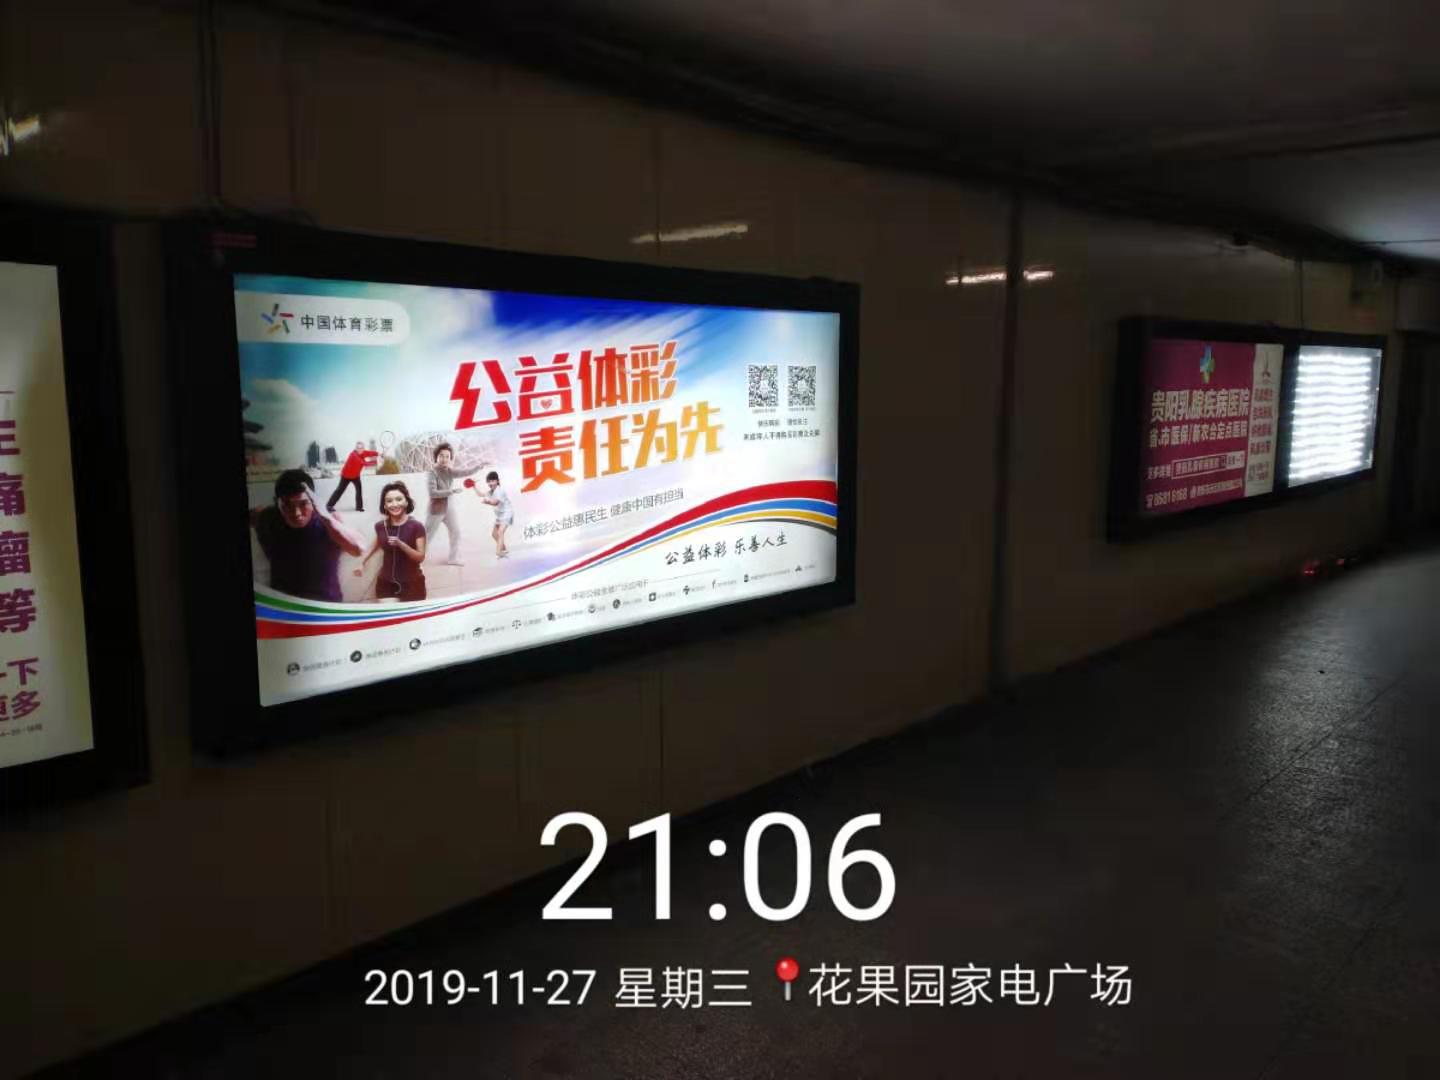 贵阳市花果园家电广场地下通道灯箱中国体育彩票广告画面